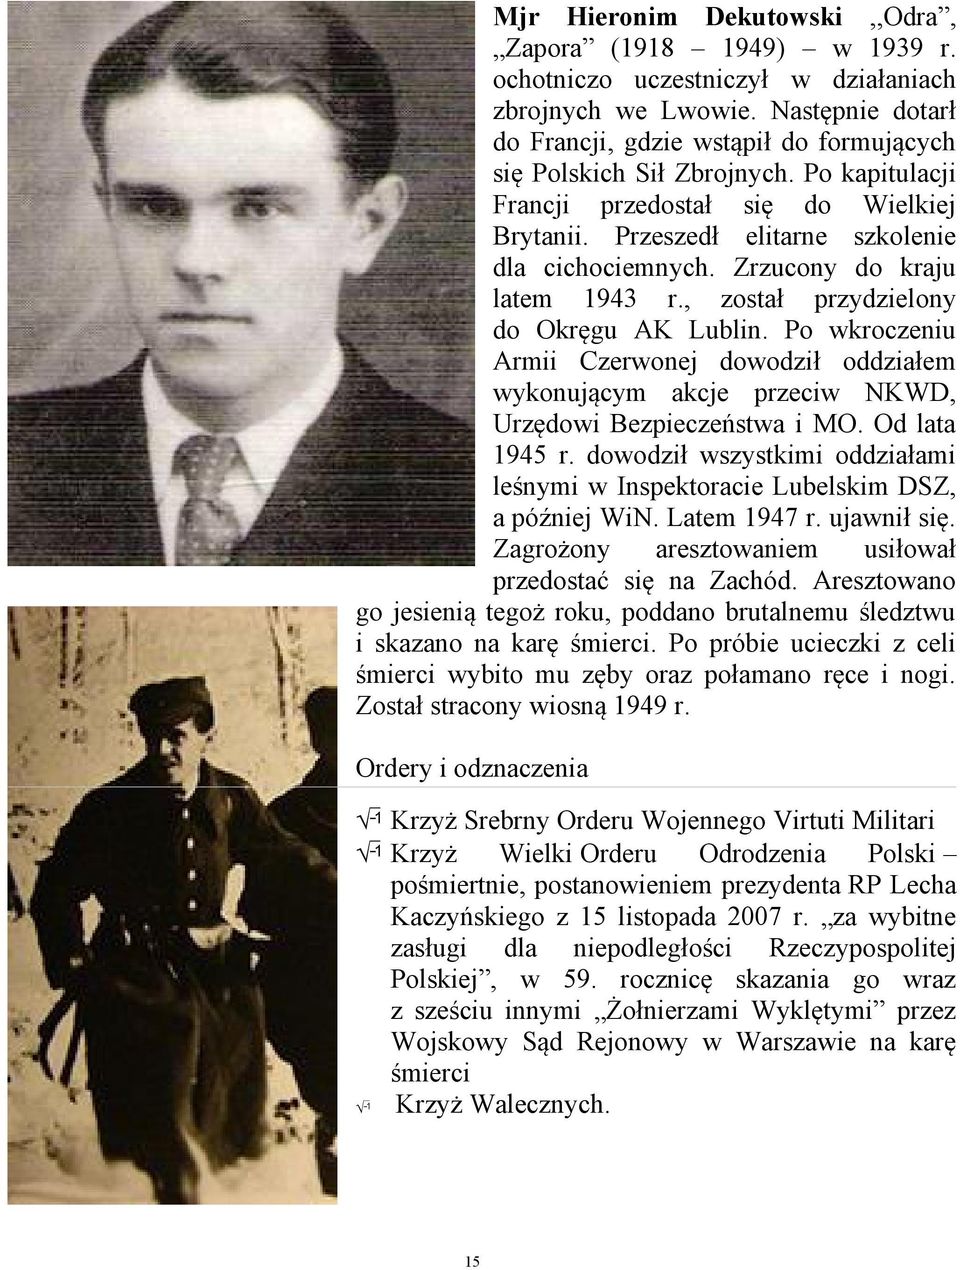 Zrzucony do kraju latem 1943 r., został przydzielony do Okręgu AK Lublin. Po wkroczeniu Armii Czerwonej dowodził oddziałem wykonującym akcje przeciw NKWD, Urzędowi Bezpieczeństwa i MO. Od lata 1945 r.